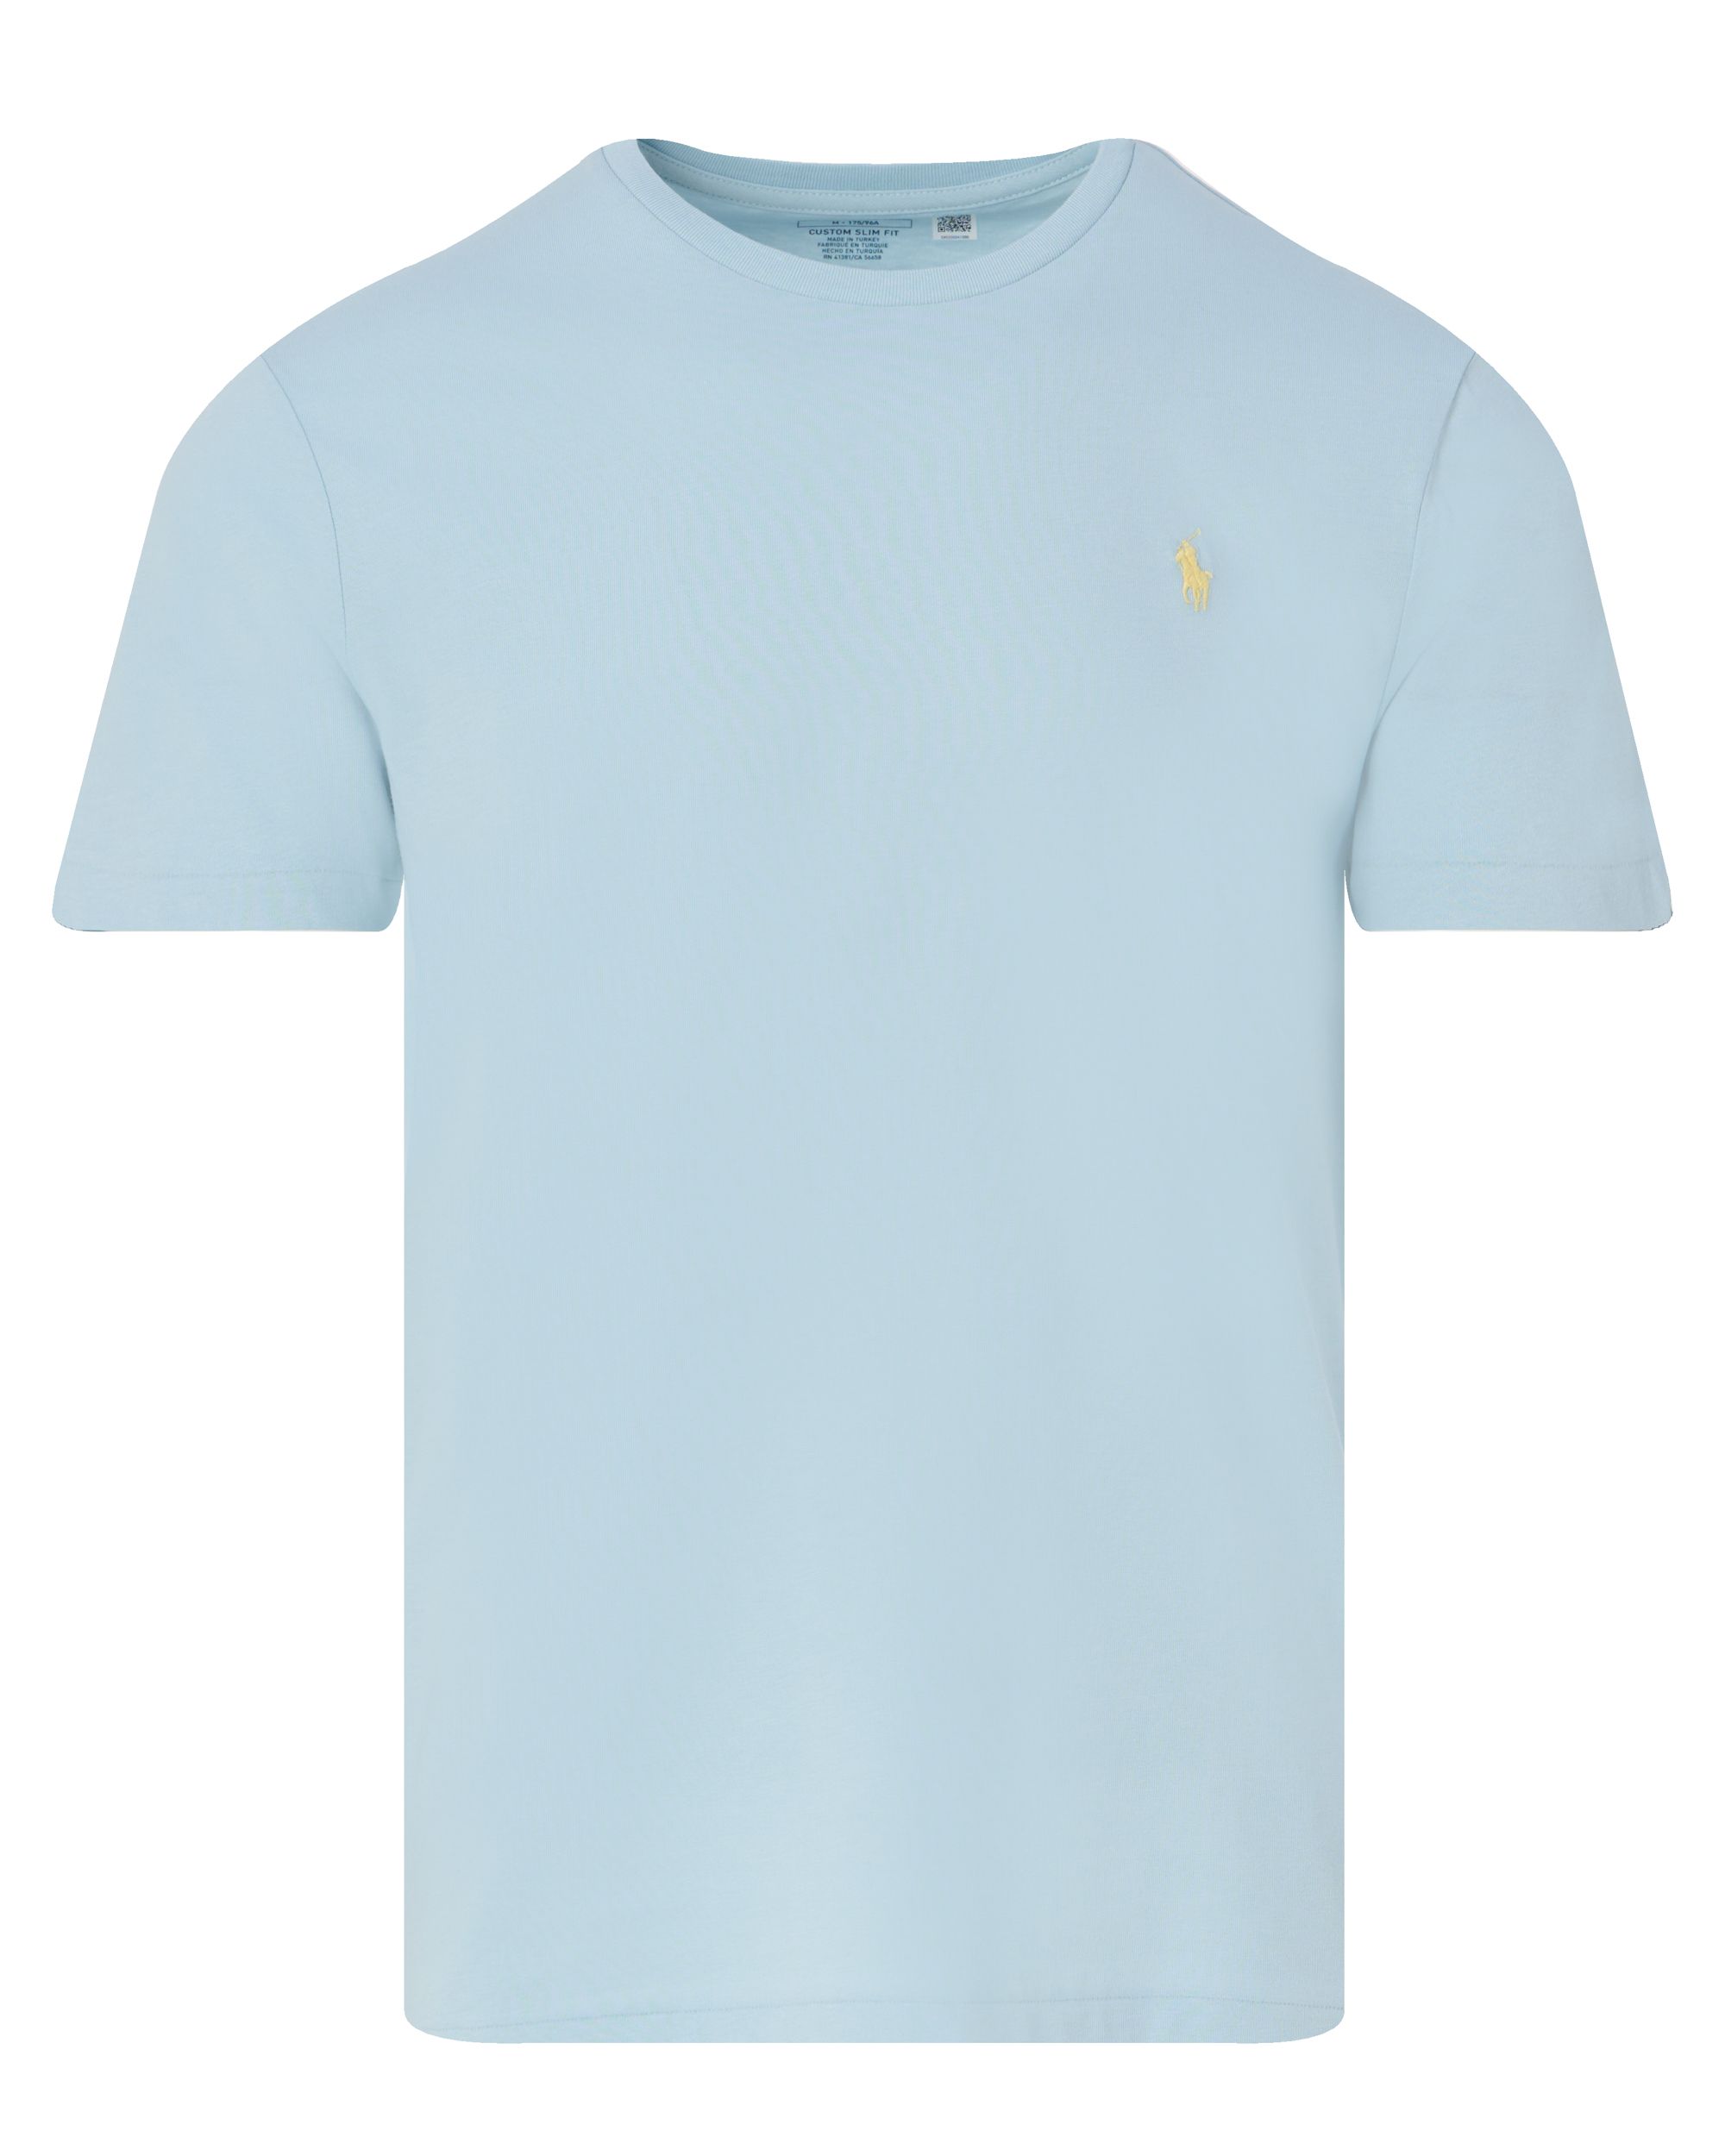 Polo Ralph Lauren T-shirt KM Blauw 095286-001-L